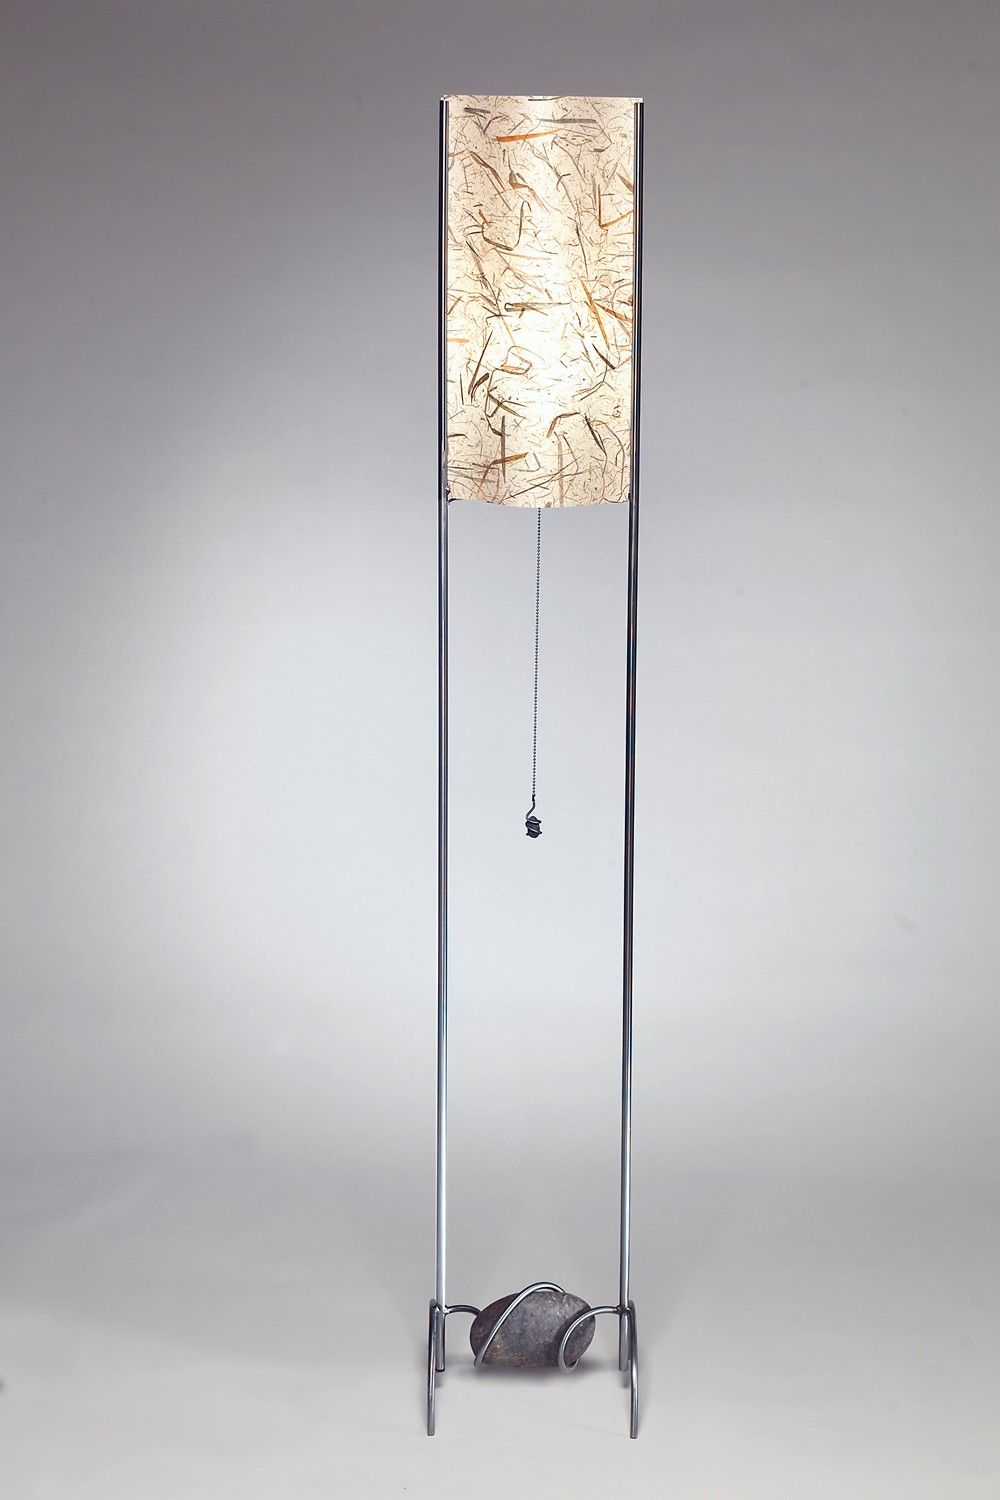 Extra Tall Floor Lamps Tall Floor Lamps Tall Lamps Floor in measurements 1000 X 1500